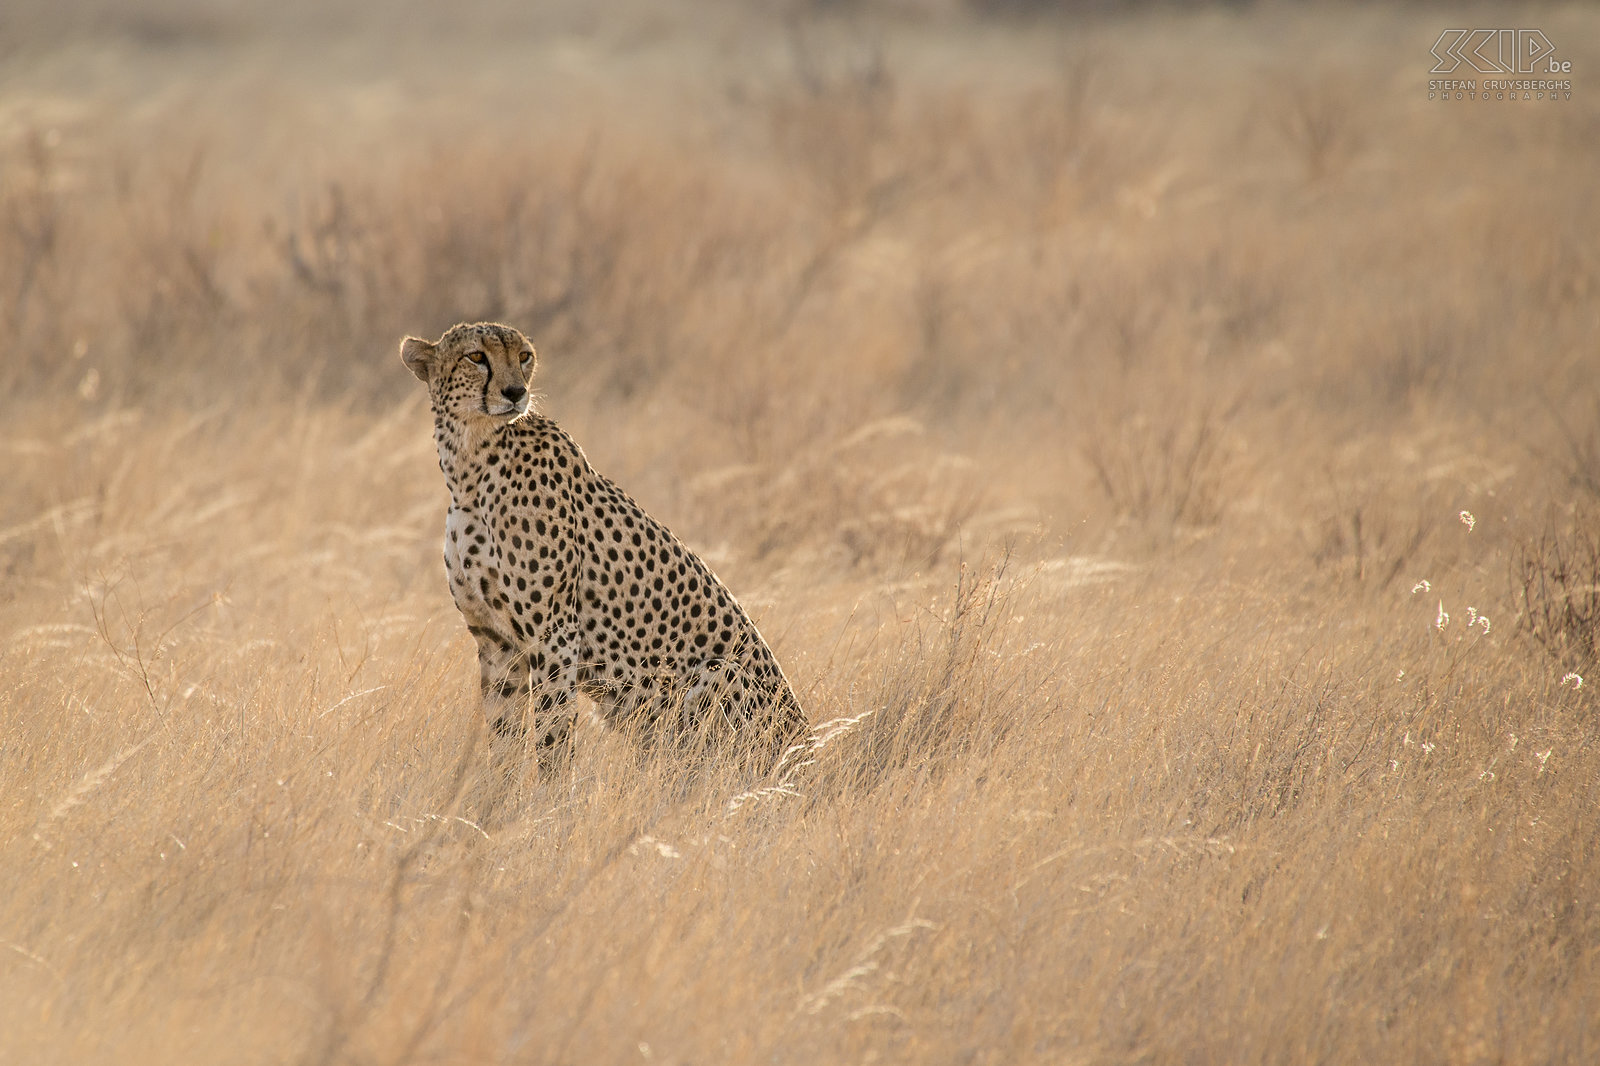 Samburu - Cheeta Het zachte zonlicht in de late namiddag was fantastisch om een paar mooie foto’s van deze cheeta/jachtluipaard te maken. Stefan Cruysberghs